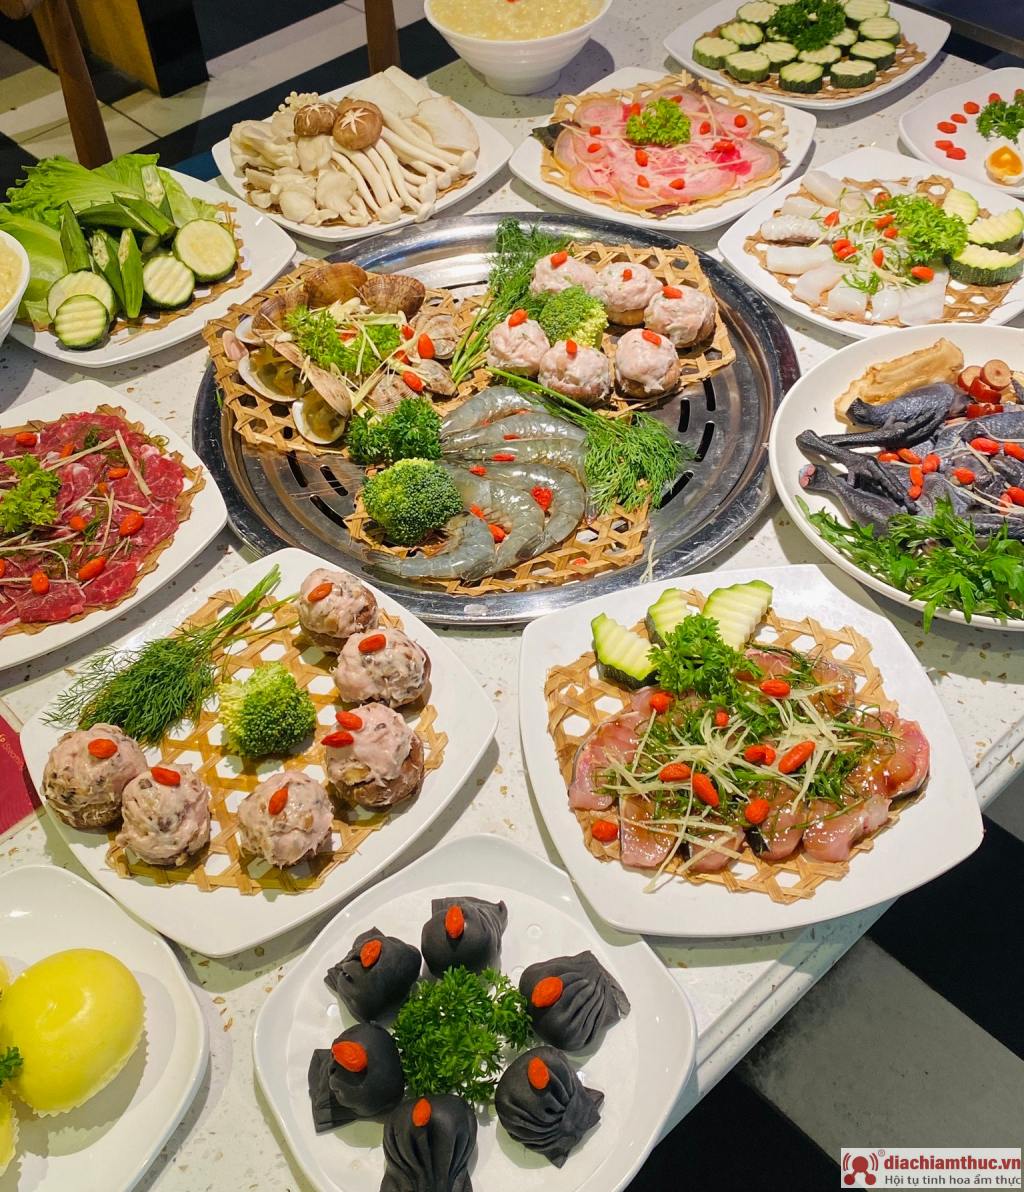 Thực đơn tại LongWang đa dạng với nhiều món ẩm thực độc đáo và hấp dẫn